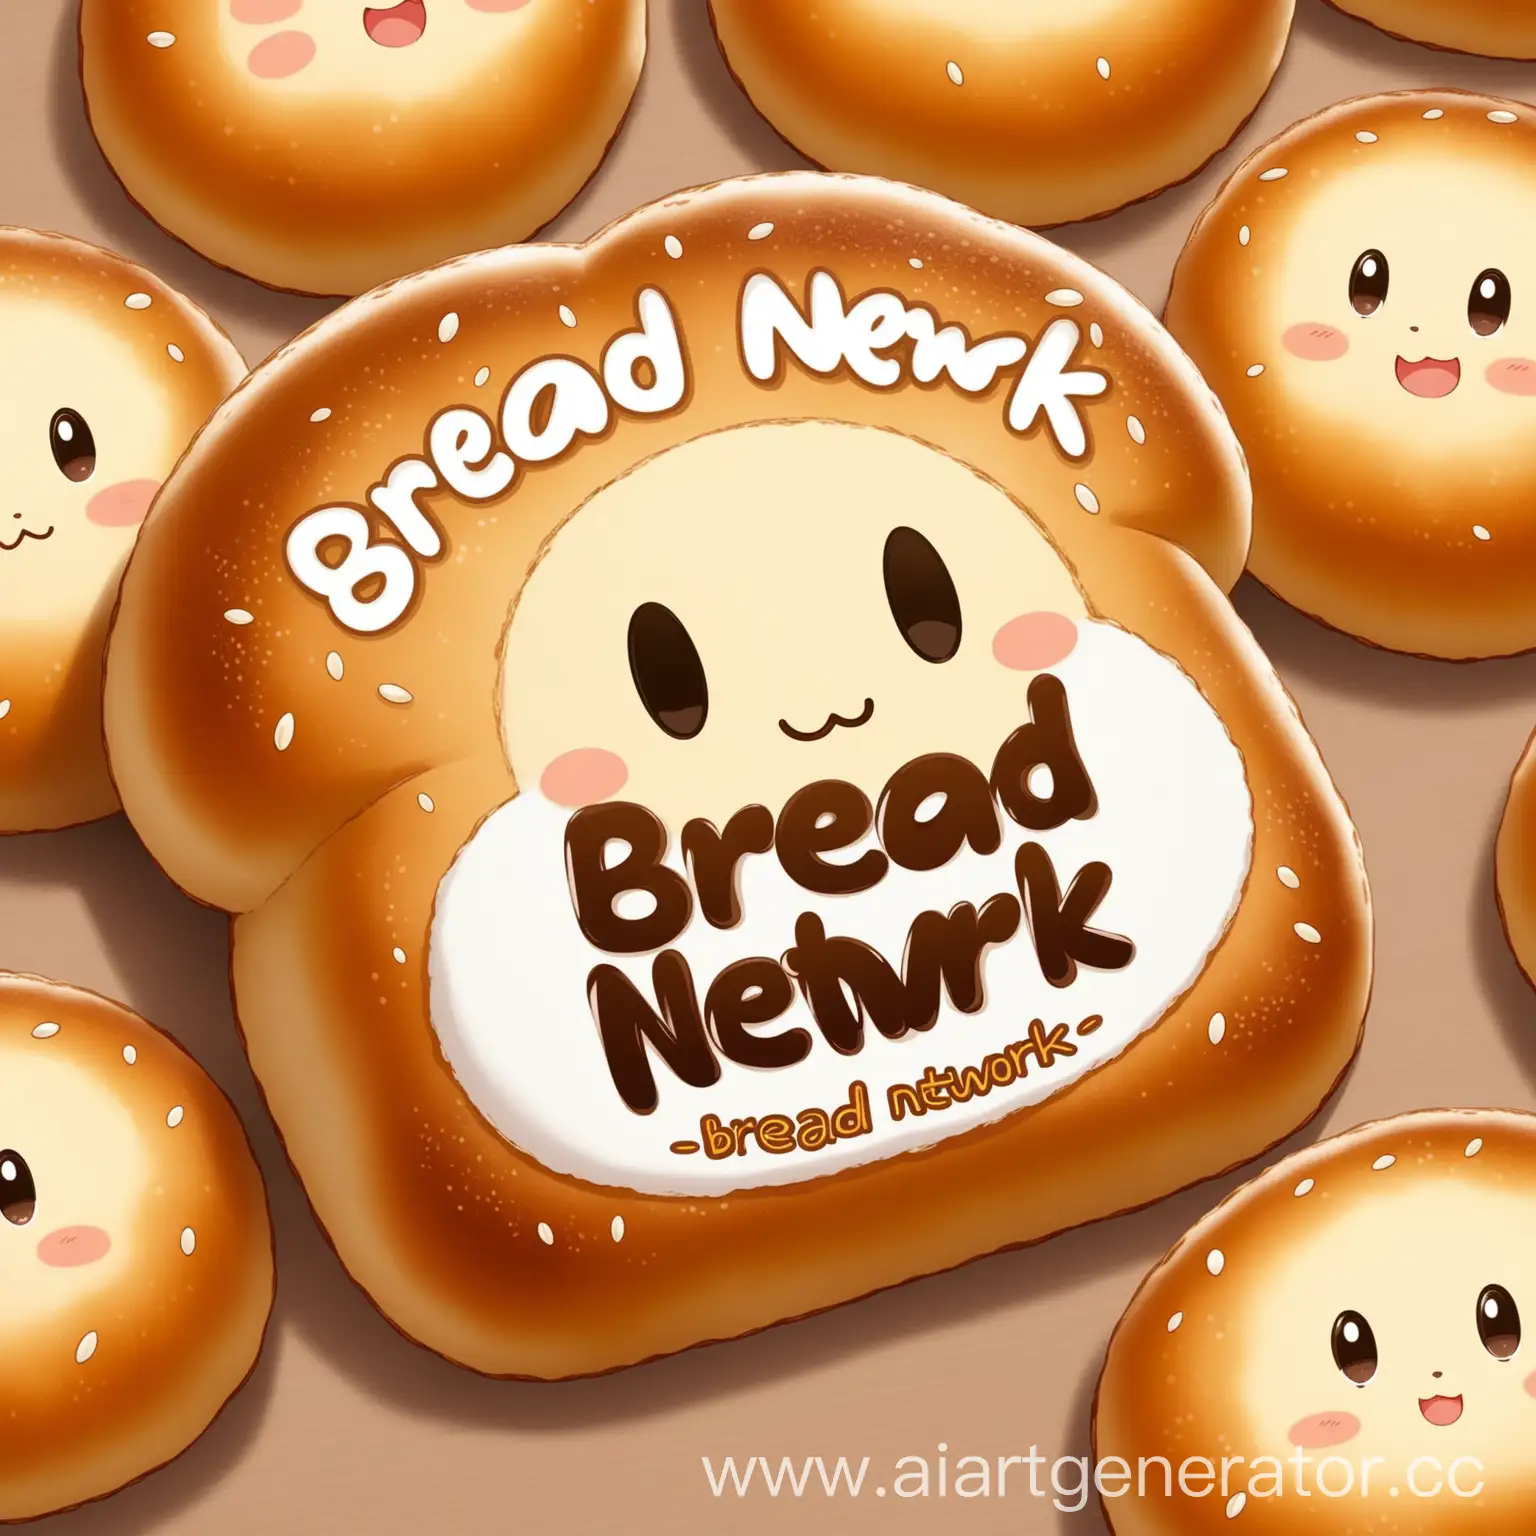 Cute-Anime-Bread-Mascot-with-Bread-Network-Inscription